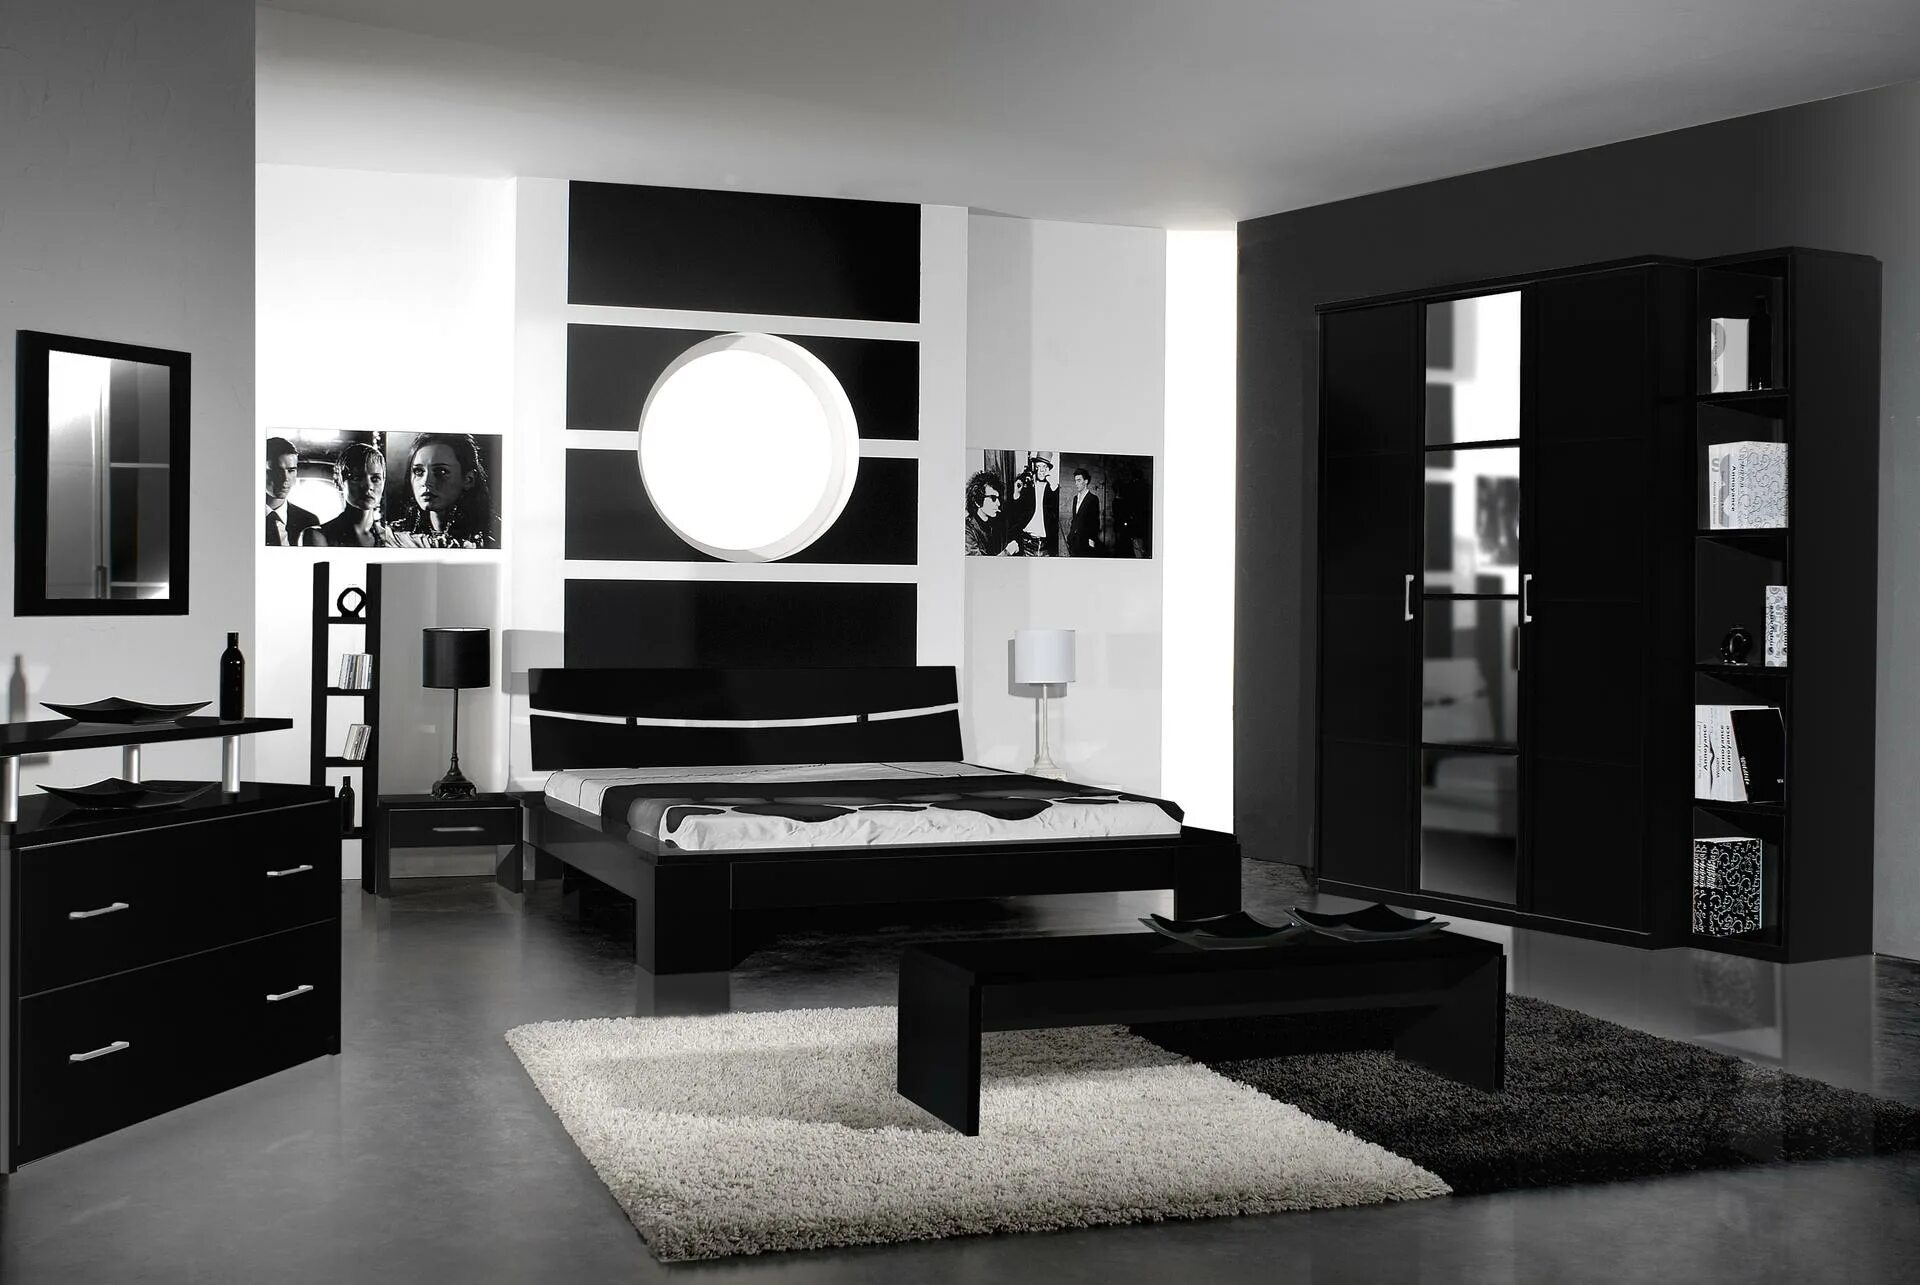 Интерьер в черных цветах. Черная мебель в интерьере. Спальня с черной мебелью. Черно белая спальня. Интерьер спальни с черной мебелью.